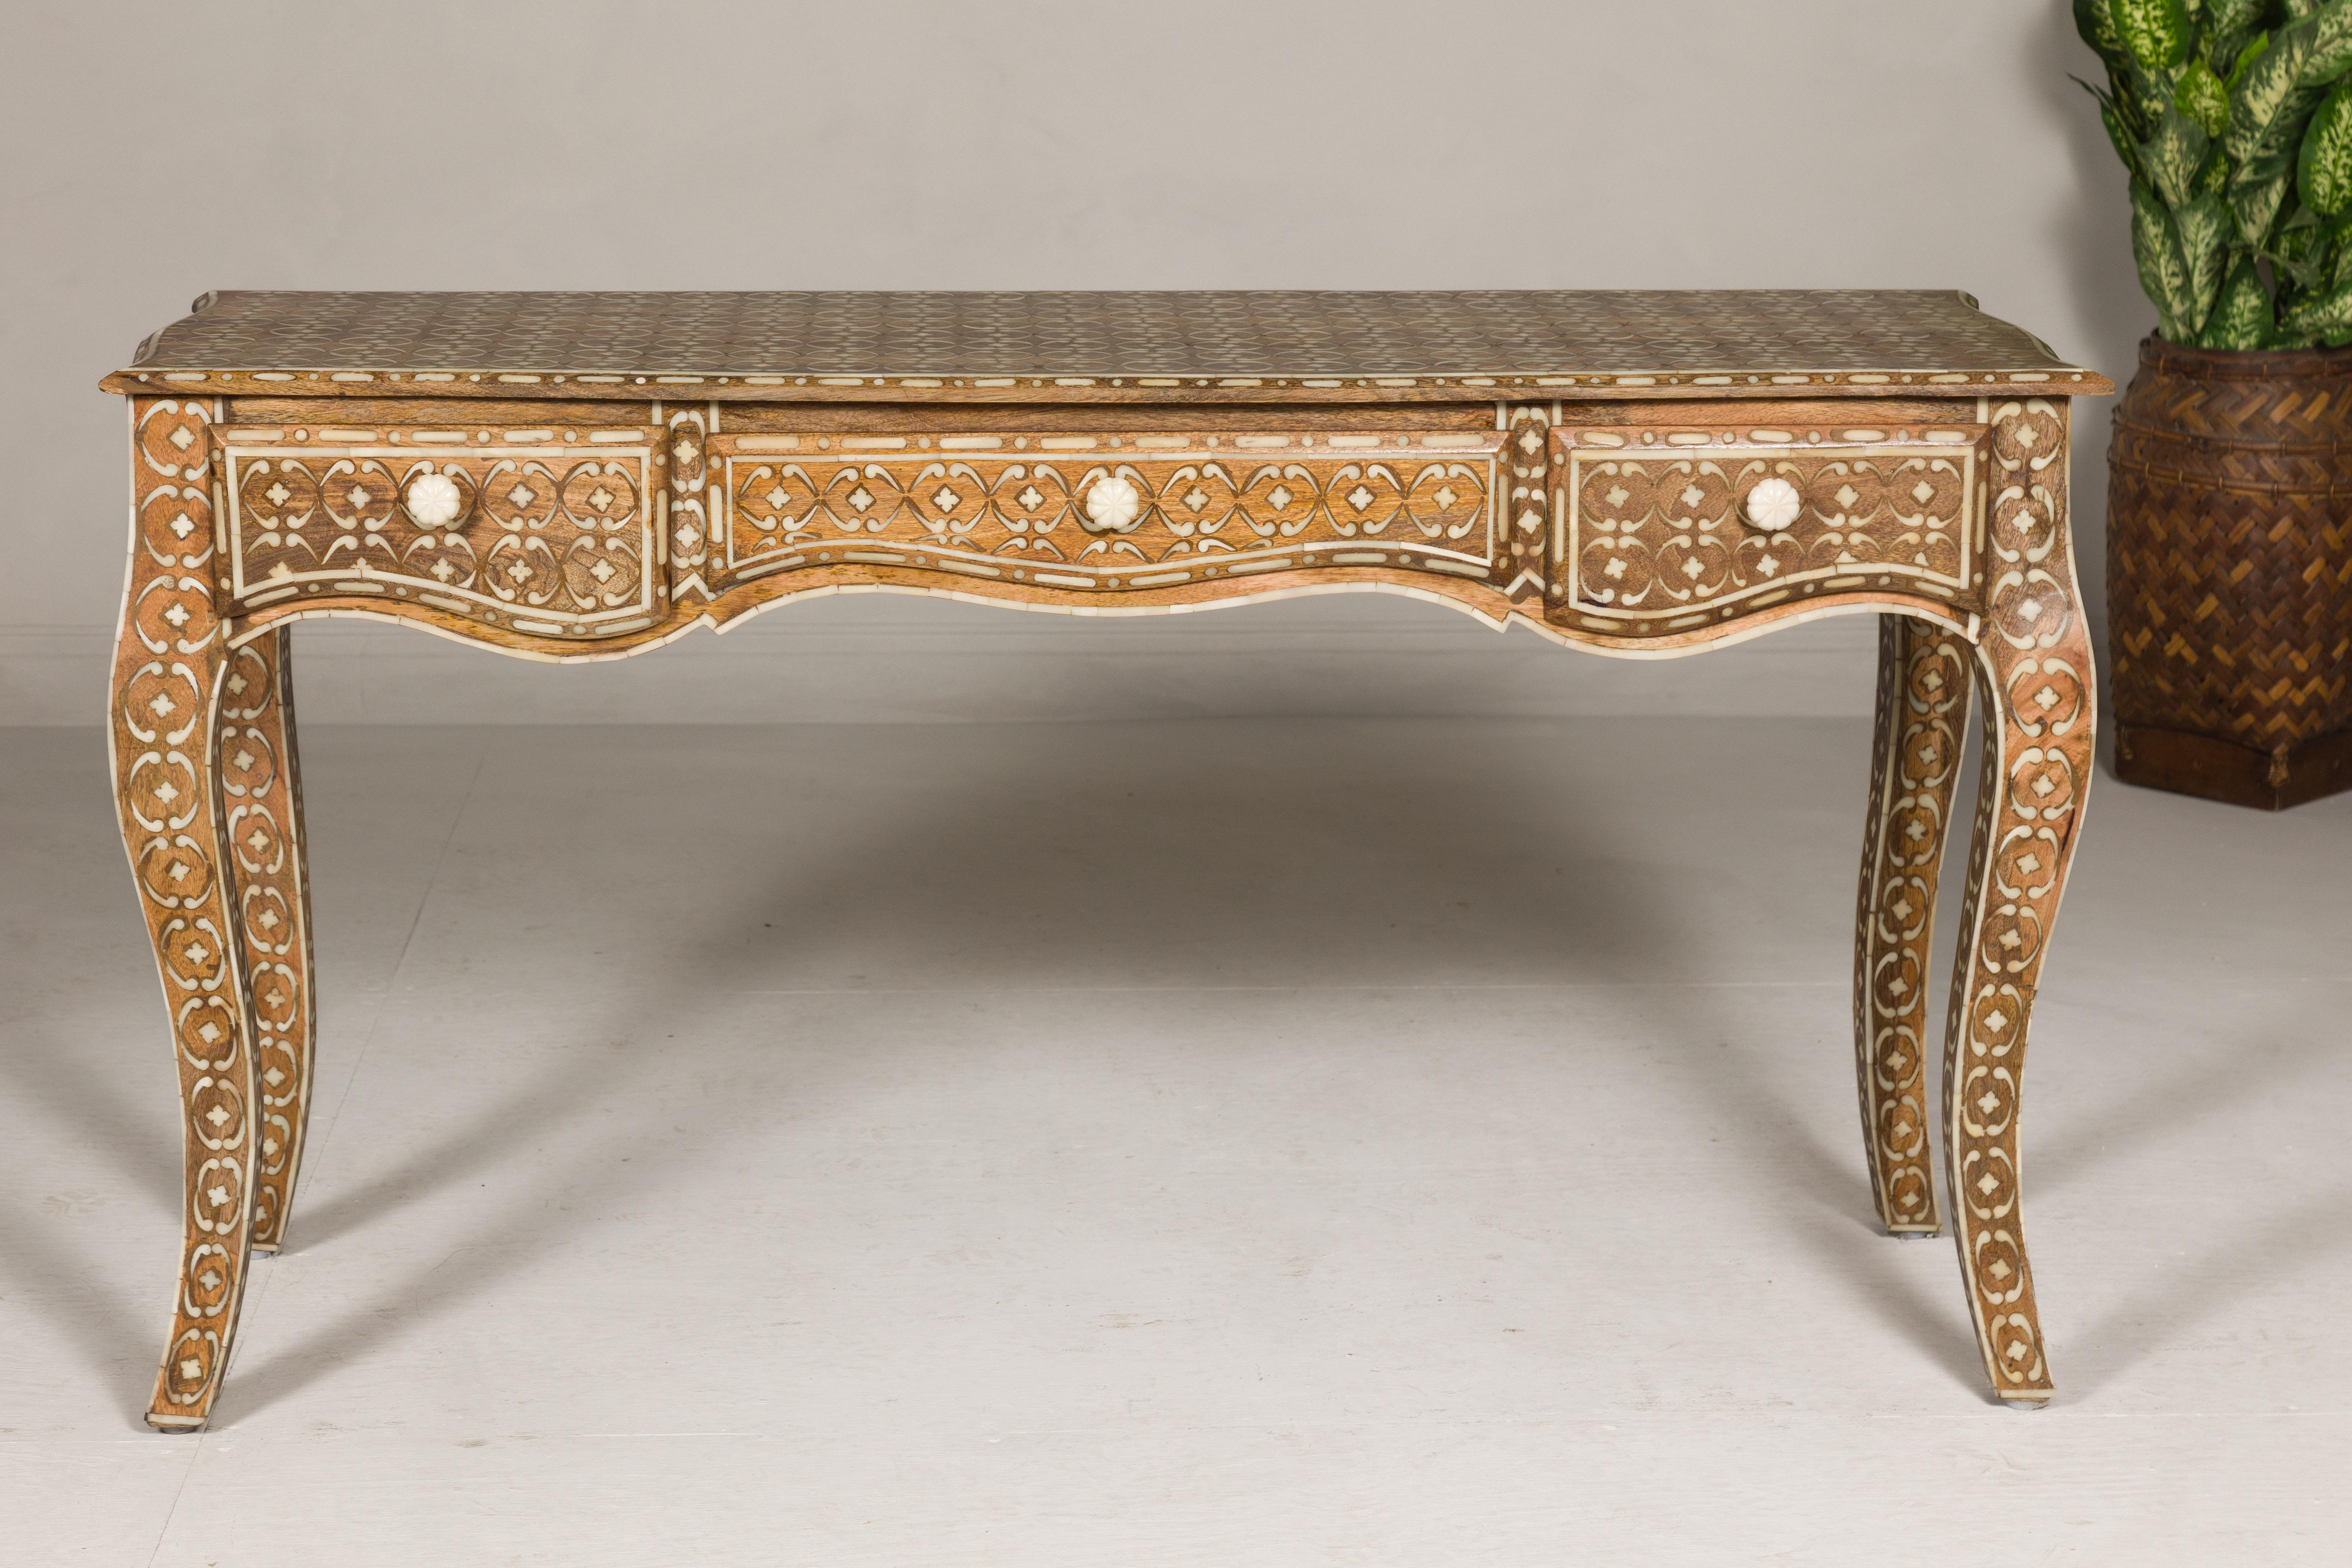 Console ou bureau anglo-indien de style Louis XV en bois de manguier avec décor d'os incrusté. Exhalant la grandeur de l'artisanat de style anglo-indien, cette table console d'inspiration Louis XV est un chef-d'œuvre sculpté dans un bois de manguier